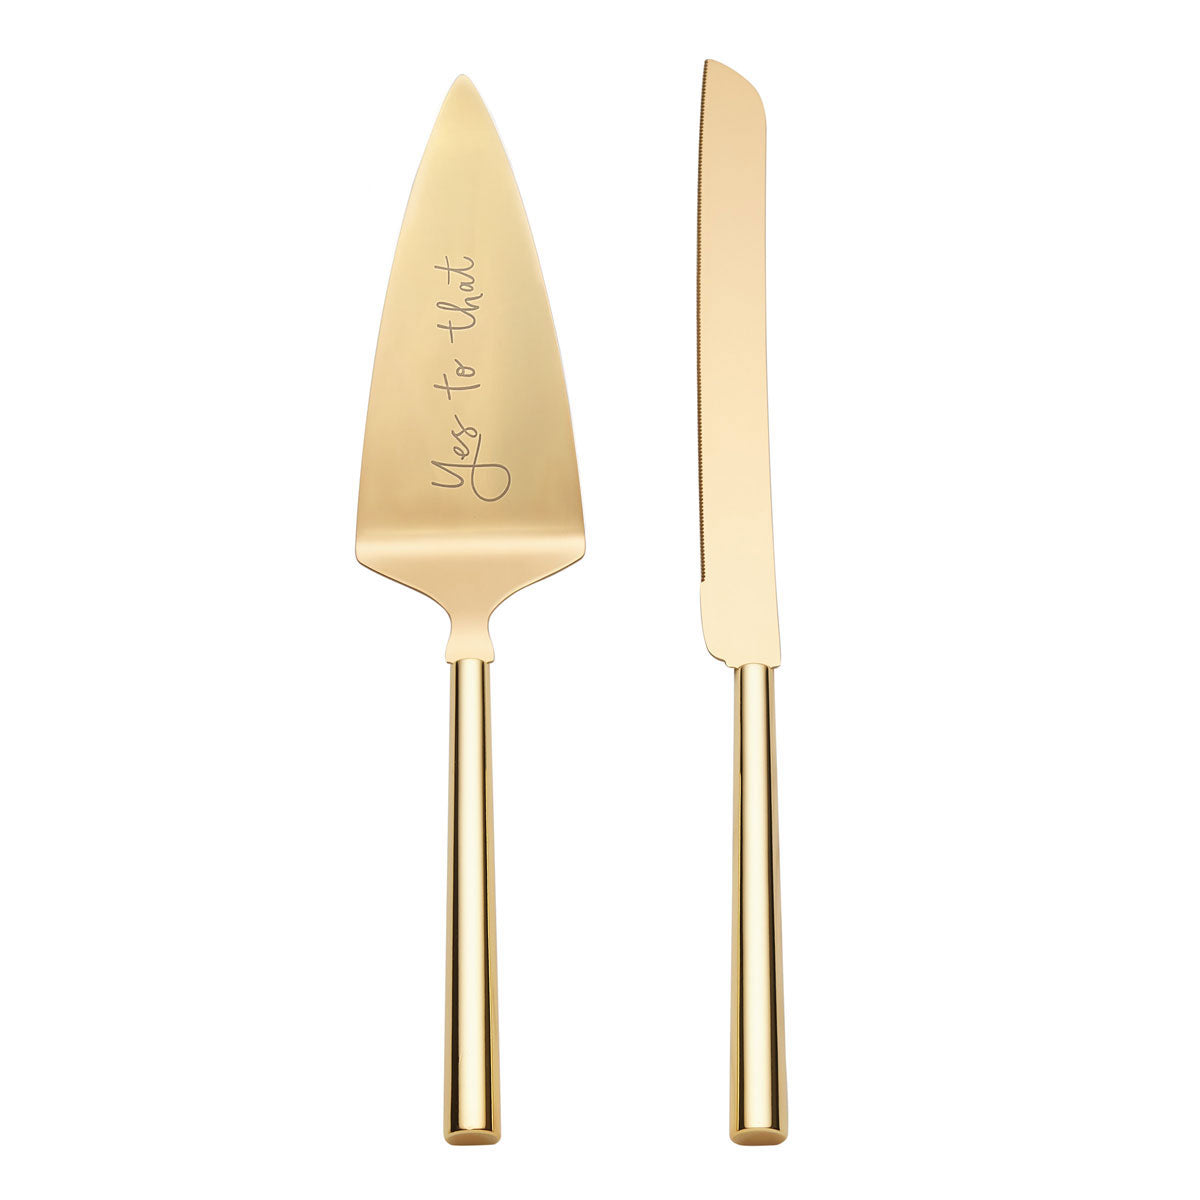 Gold Hammered Handle Knife & Server Set - Gem Awards